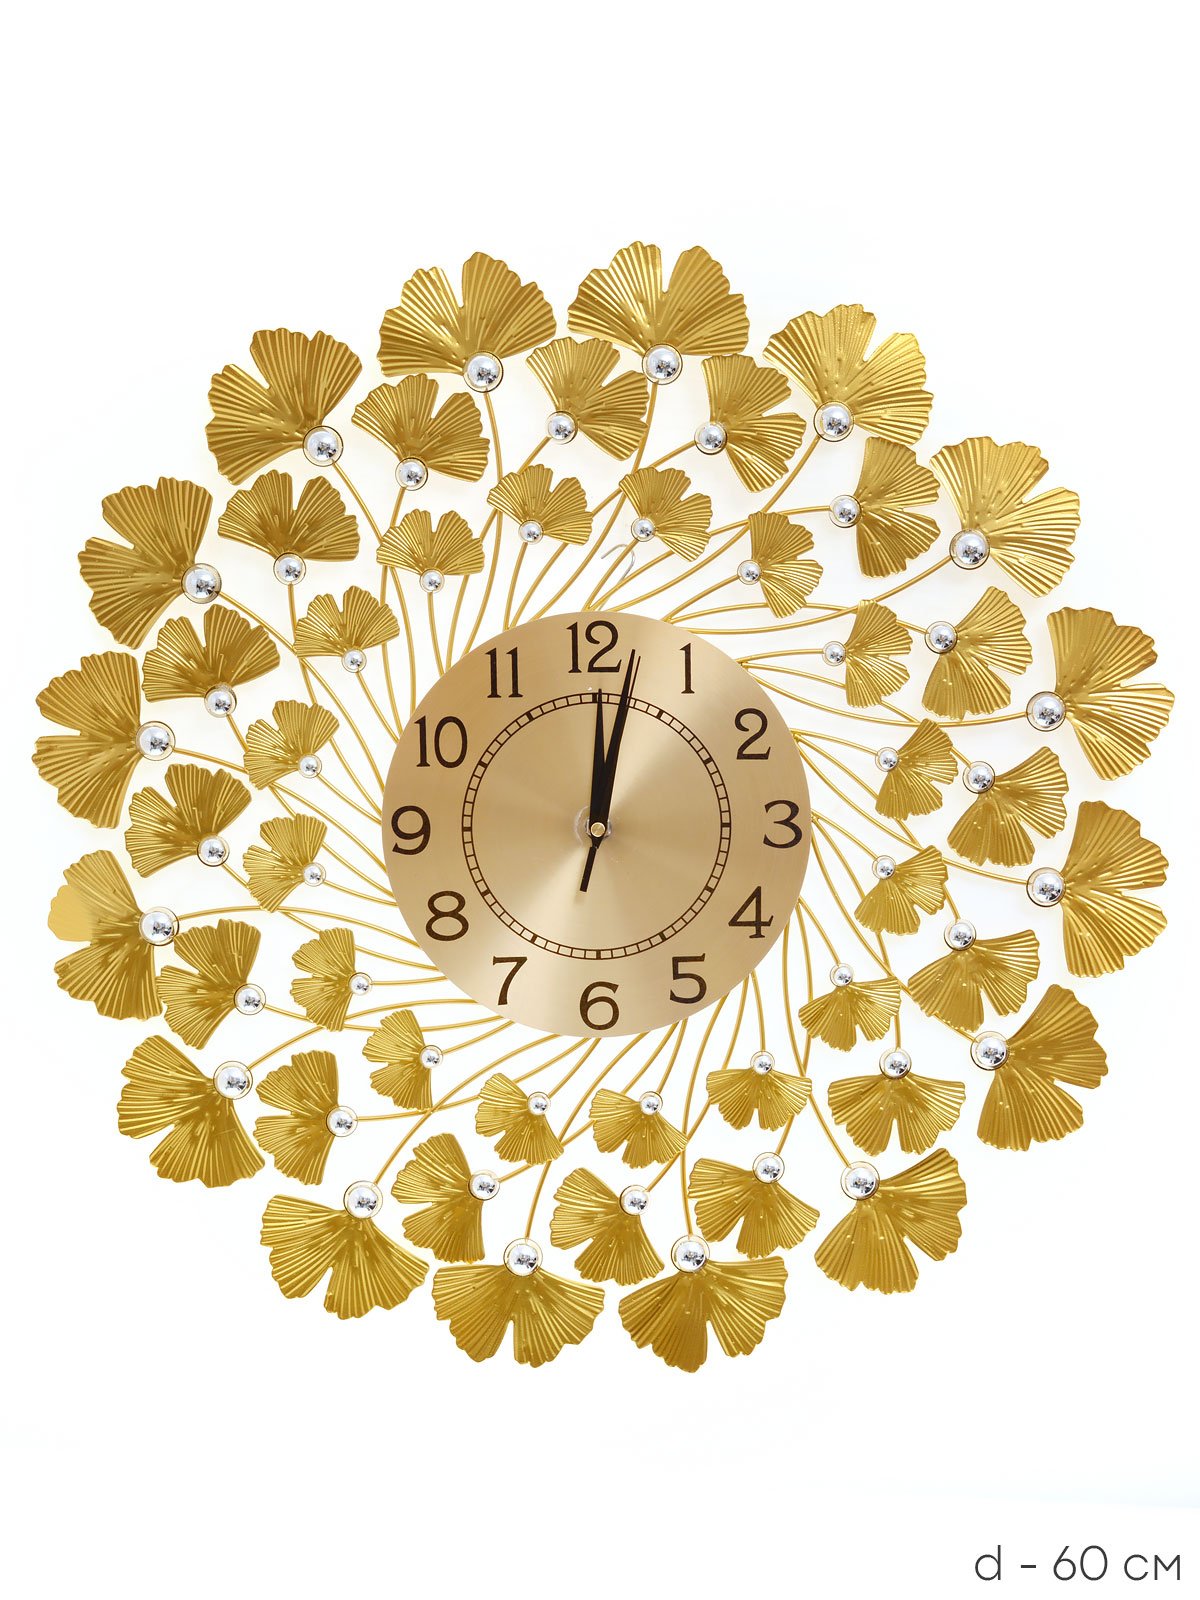 Часы настенные 60 см. Часы настенные 60 см / yj6464xl3. Часы настенные 60*60см. Купить белые с золотой отделкой настенные часы.